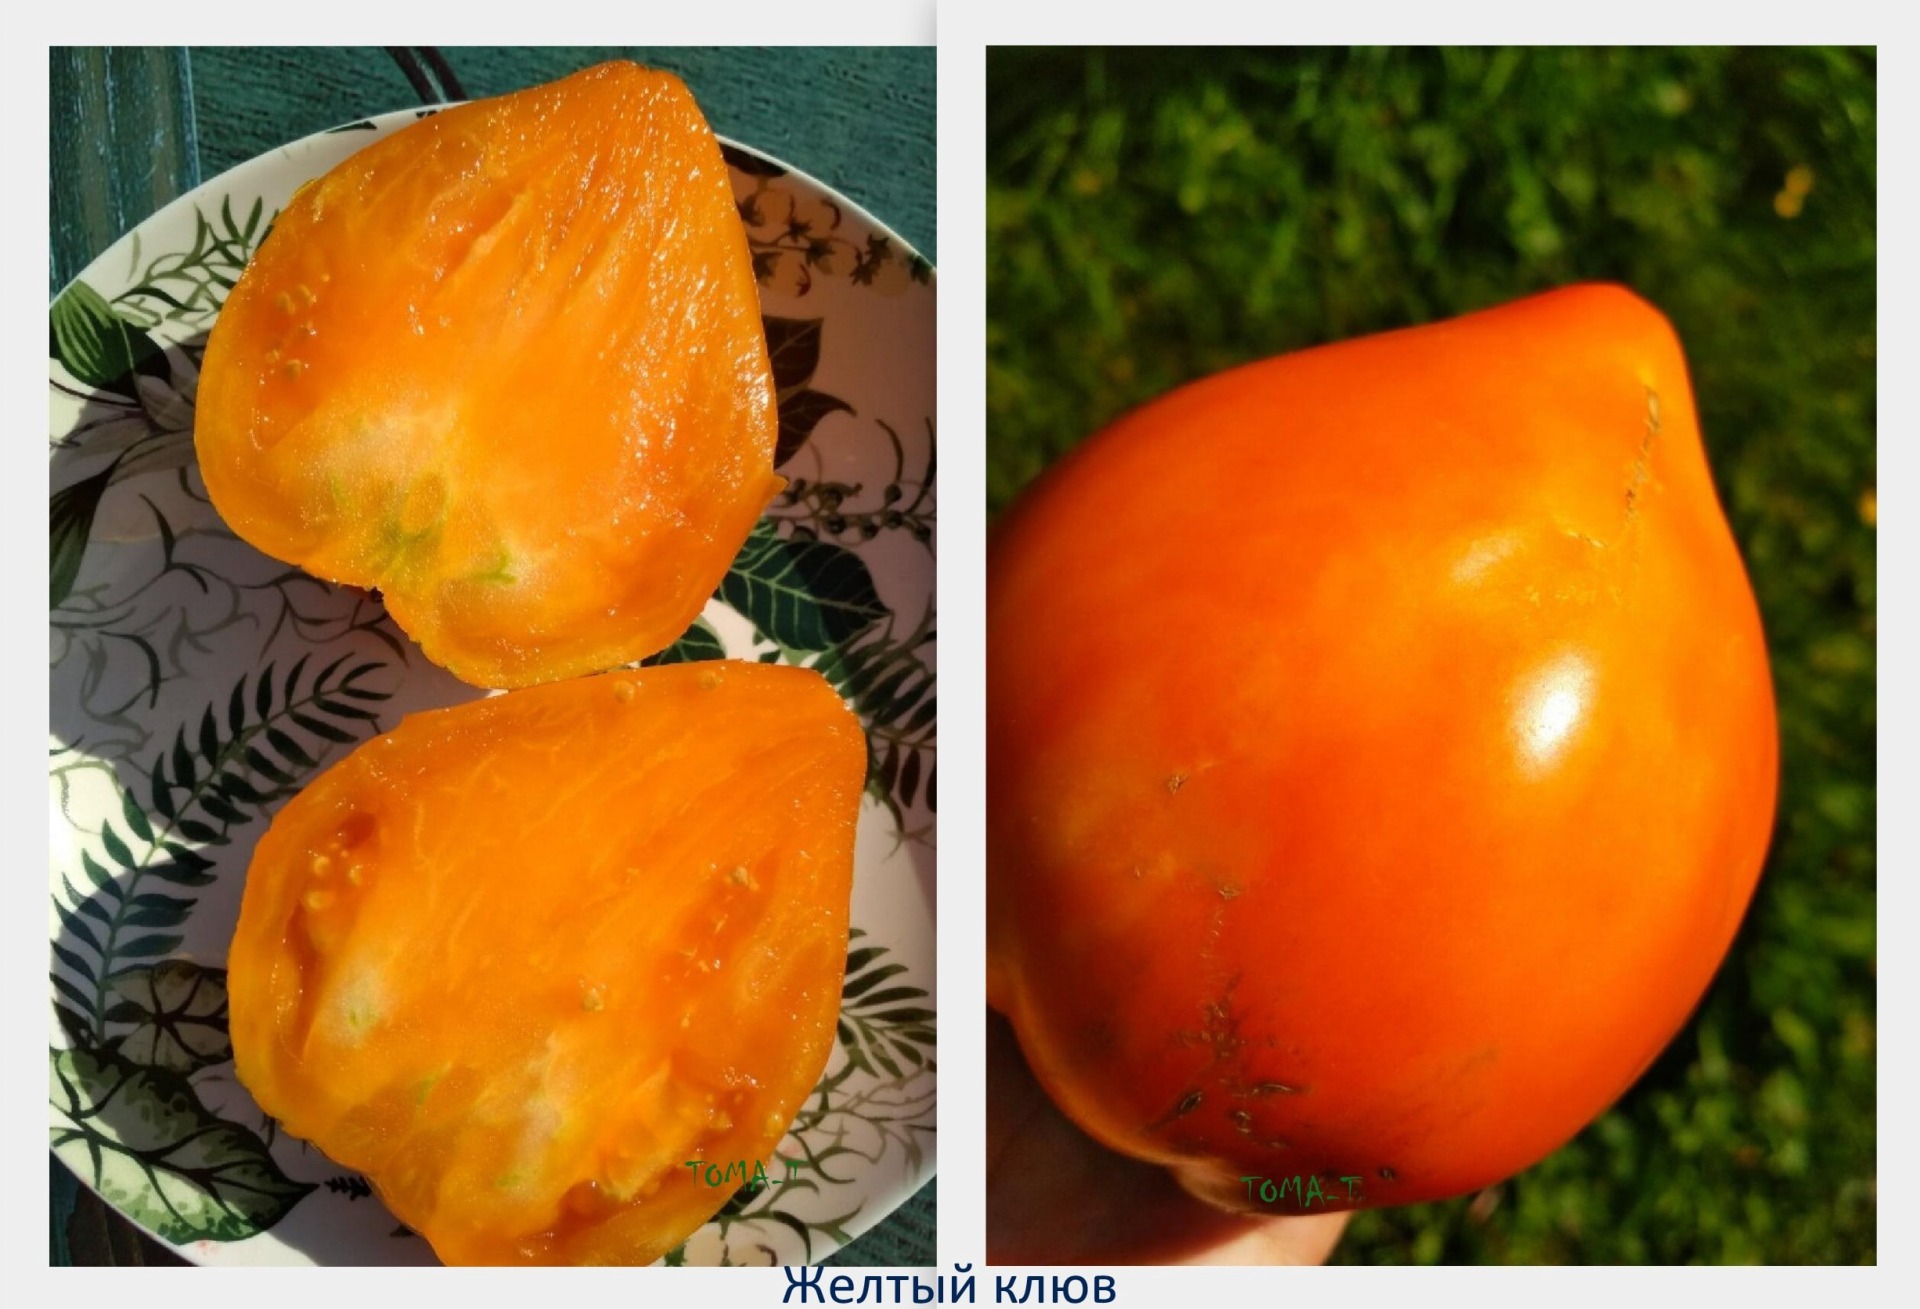 орлиный клюв томат отзывы фото достоинства недостатки